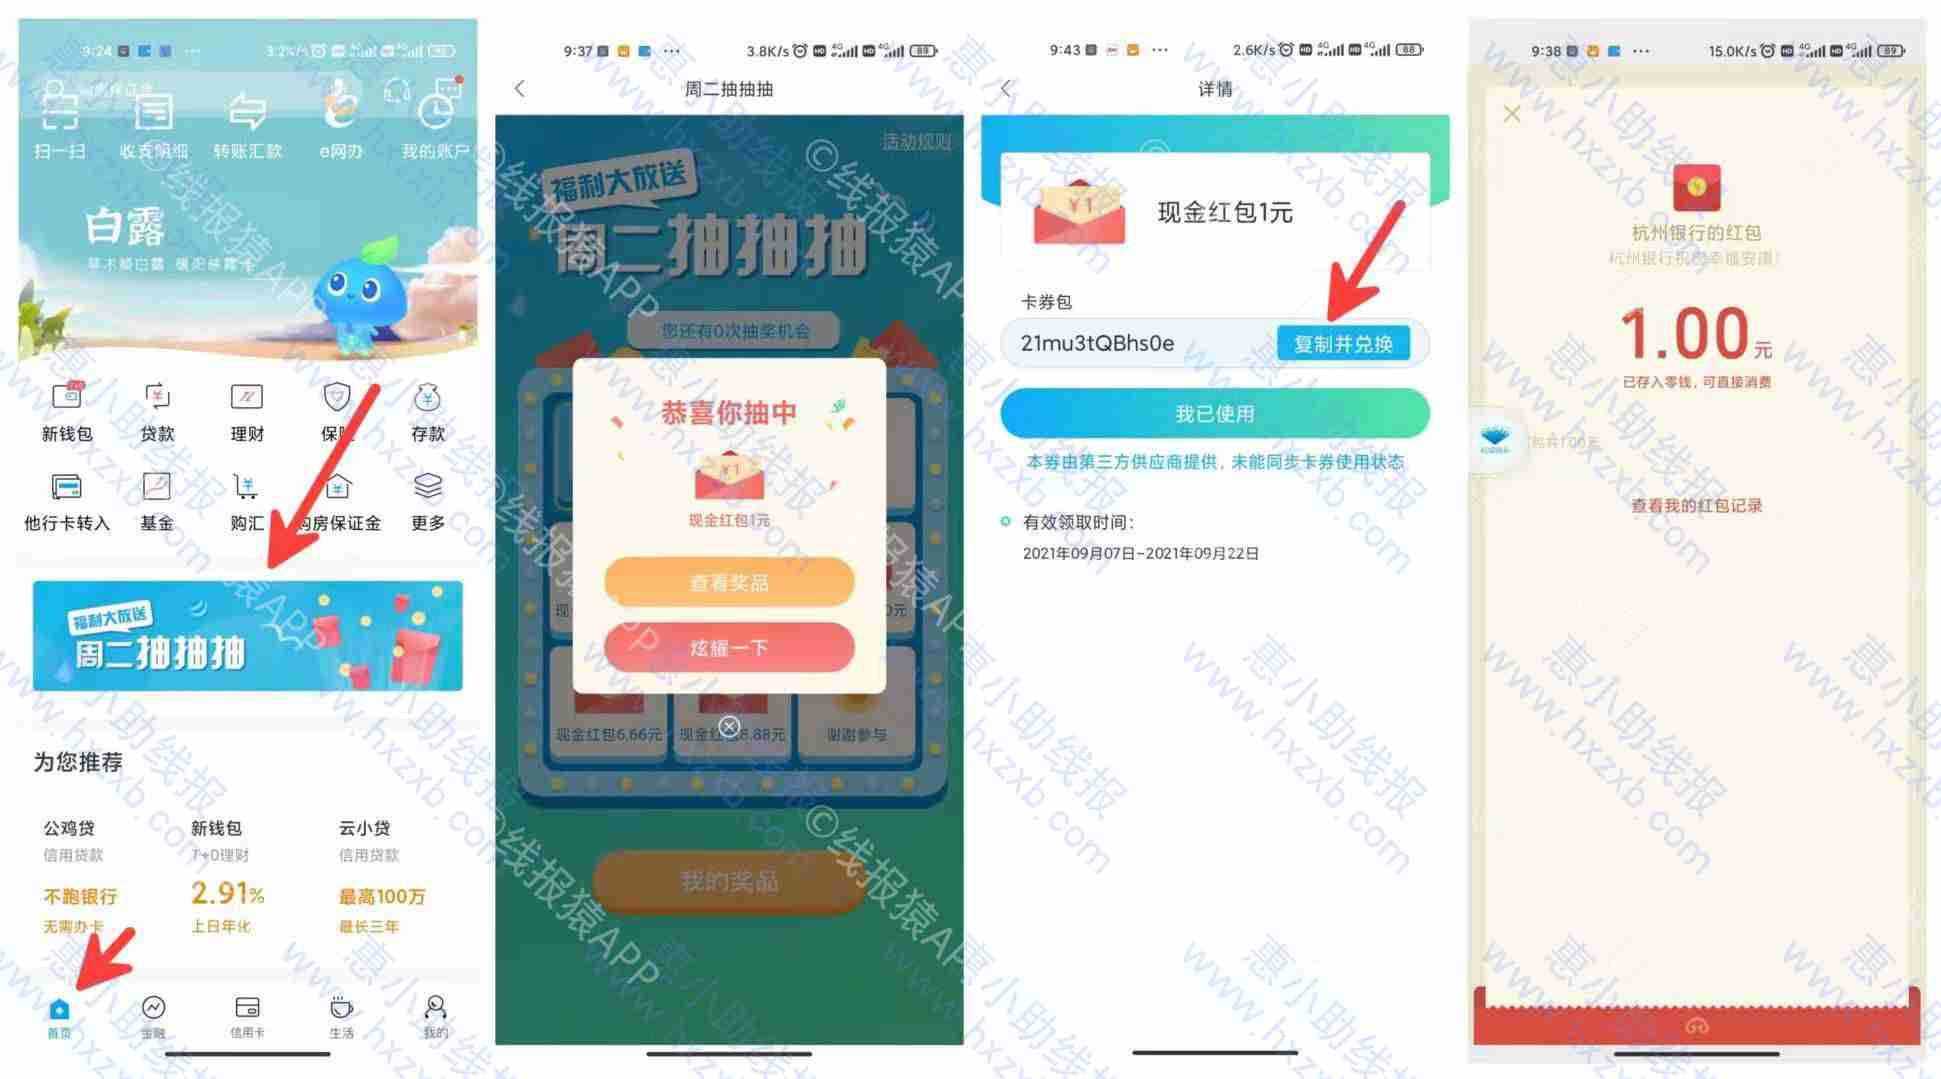 杭州银行周二抽红包0.58-100新用户有微信红包